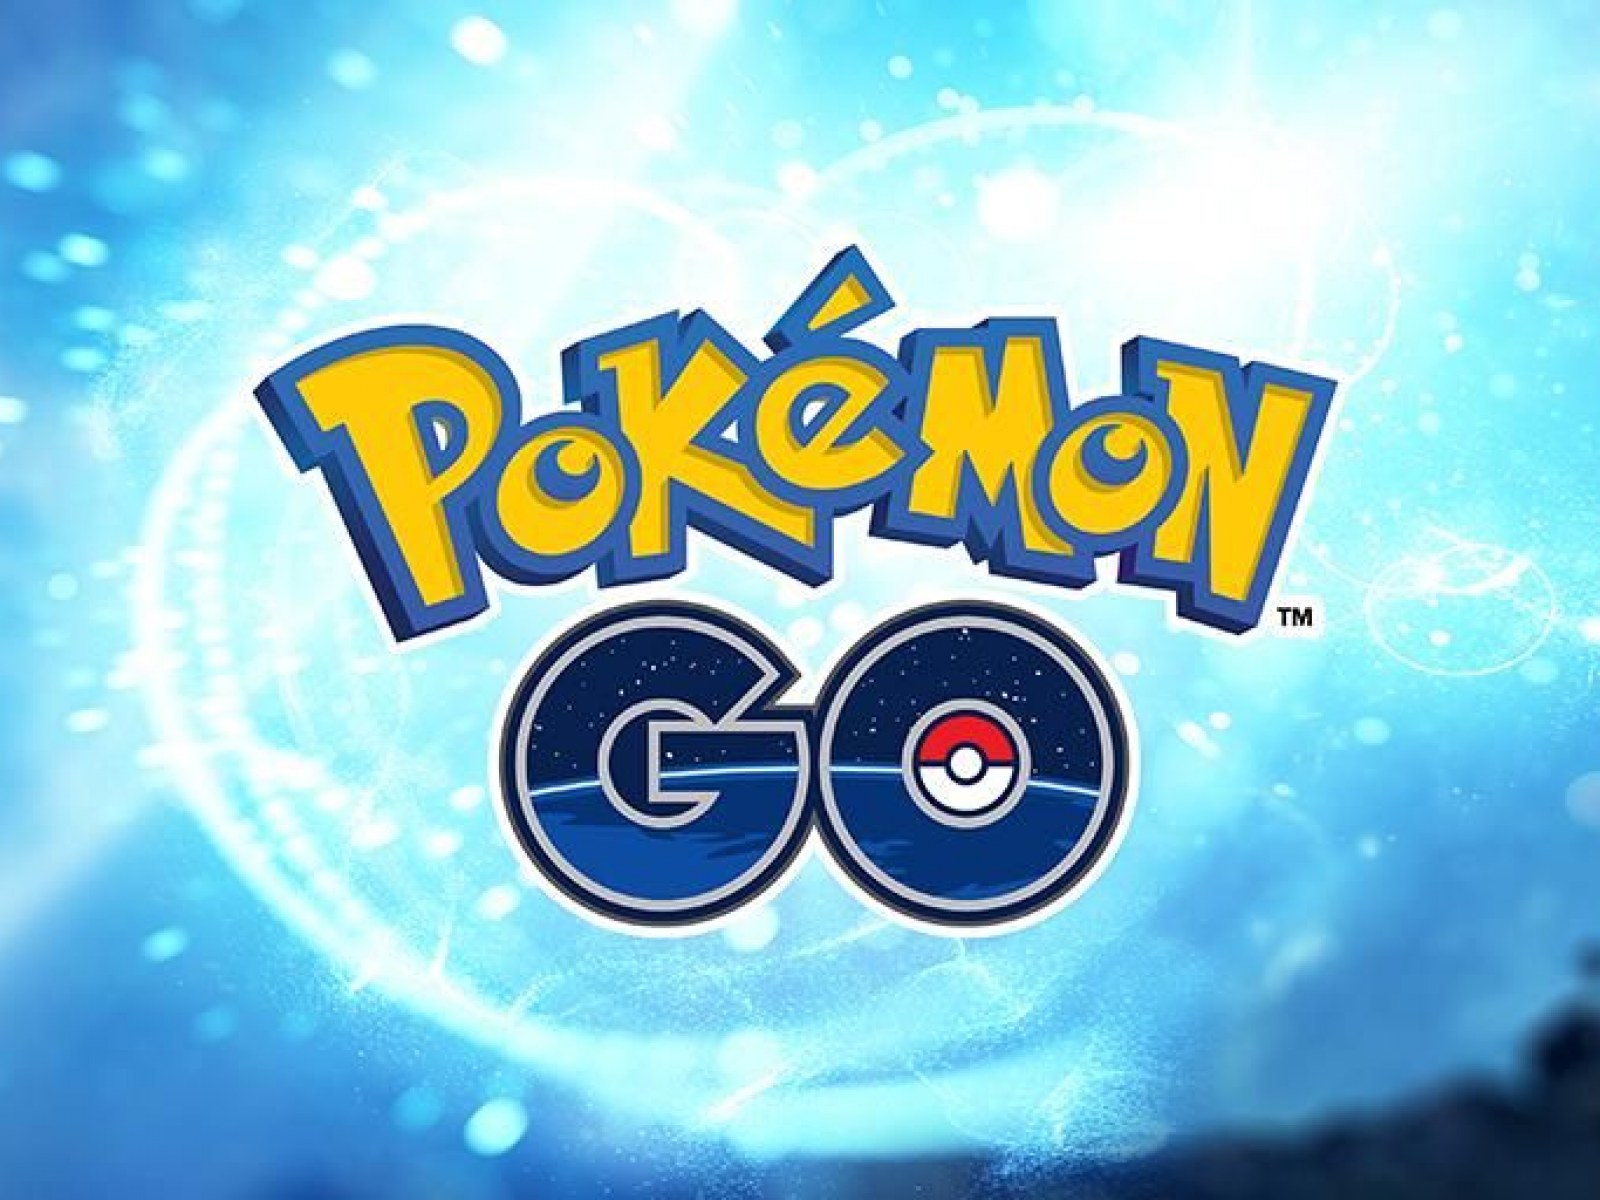 Pokémon Go - Evento Lendas Luminosas X - Como obter Xerneas, Spritzee,  Swirlix e Goomy